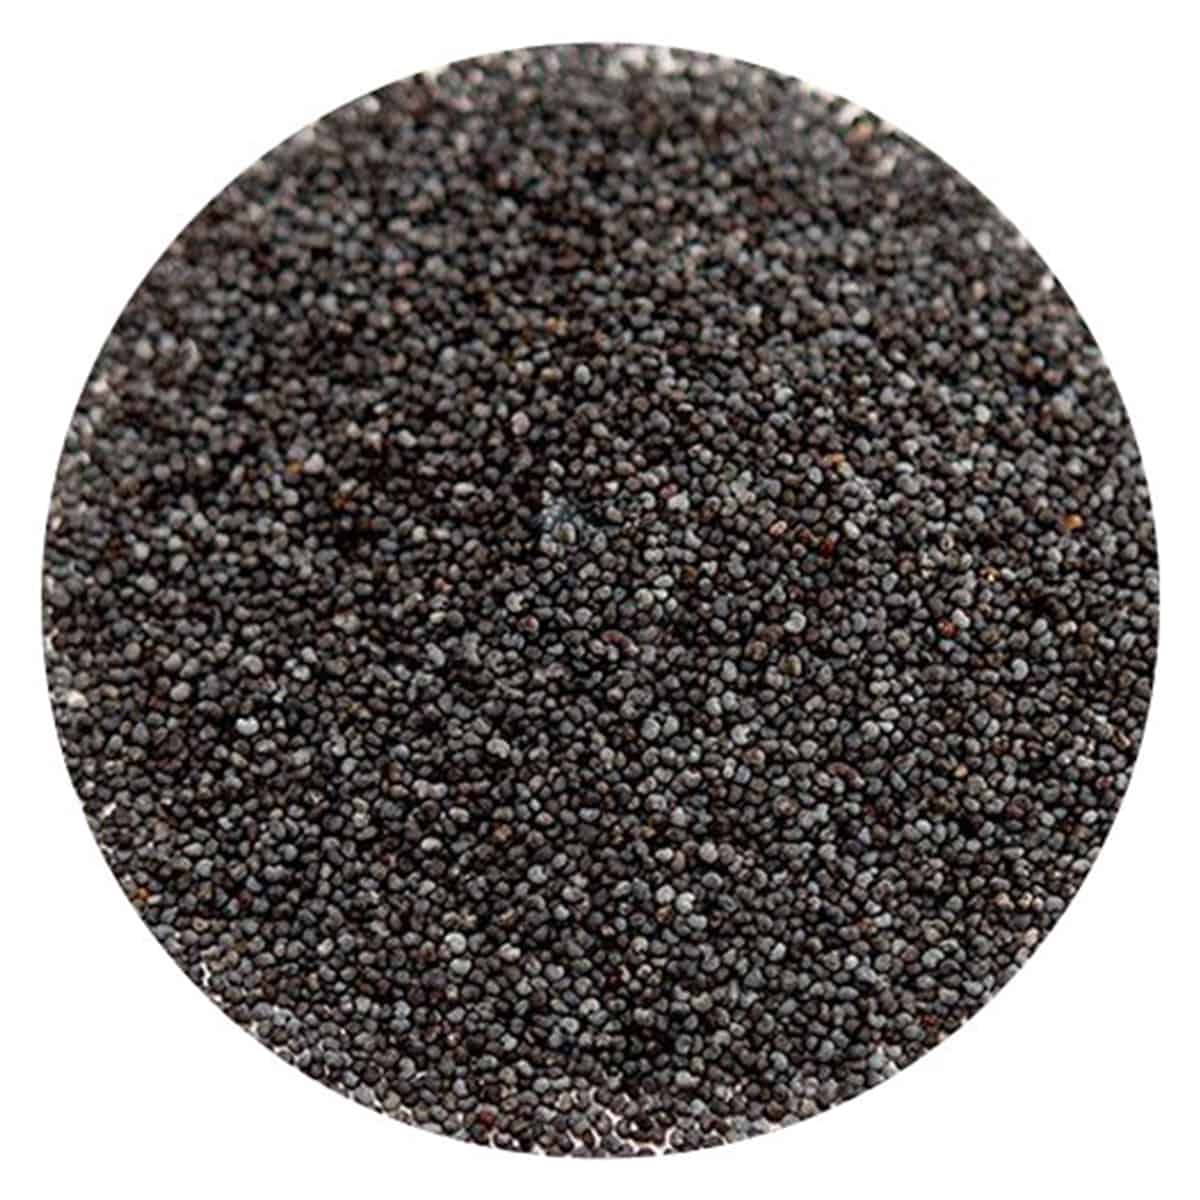 Buy IAG Foods Black Poppy Seeds - 1 kg